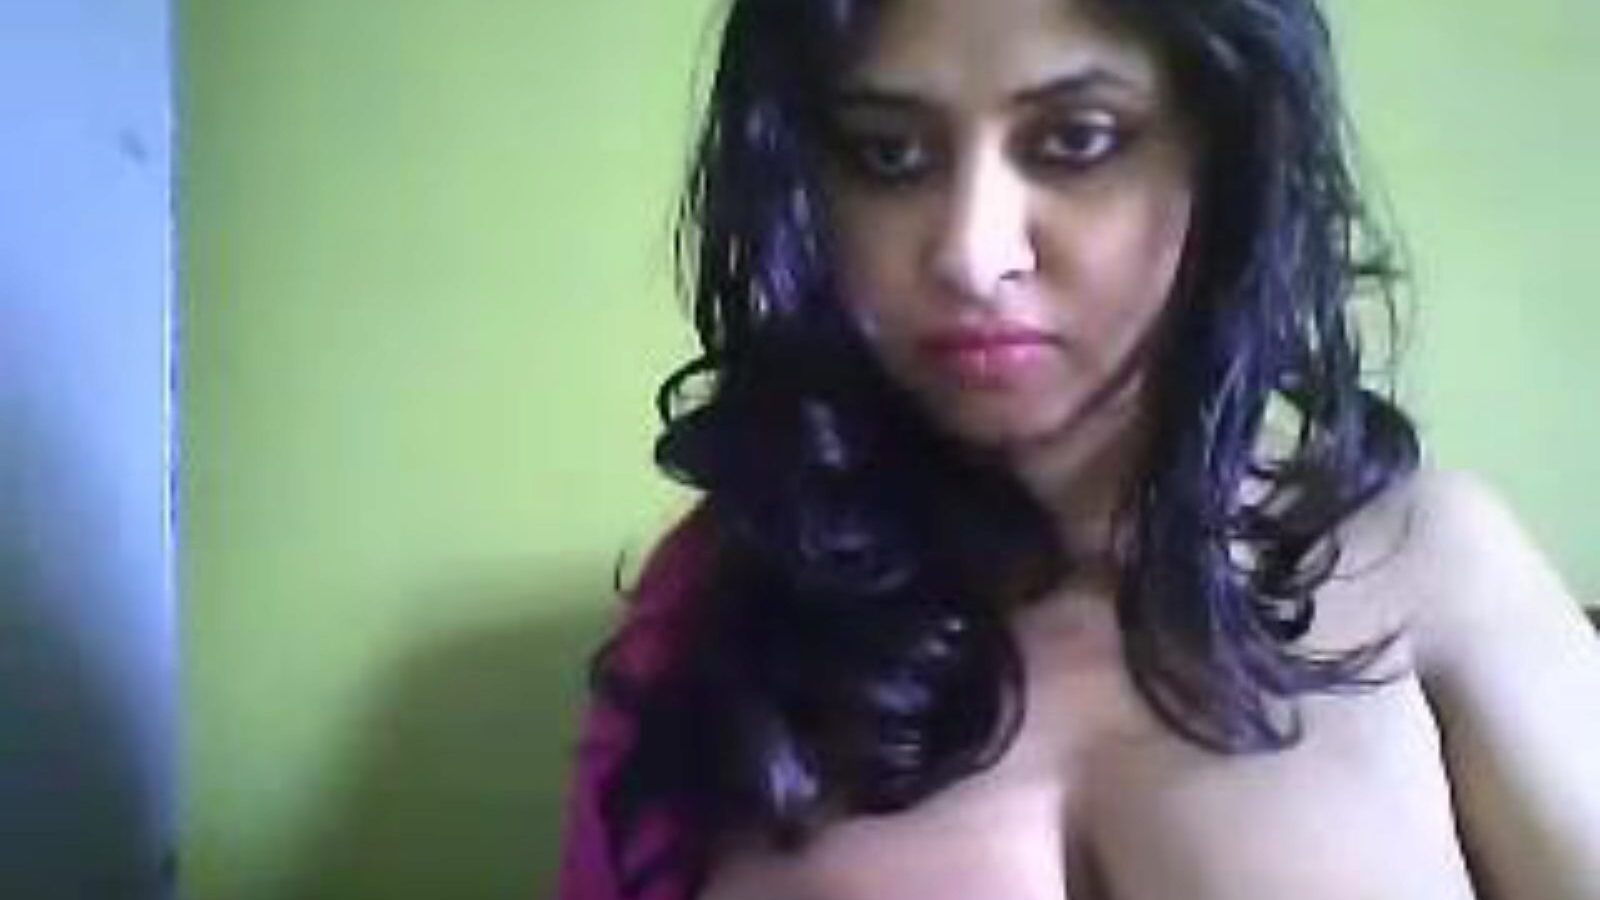 Dezső forró cam anya szeretnék baszni deepa, ingyenes indiai pornó 27: xhamster nézni Dezső hot cam anya & xxx forró pornó videók